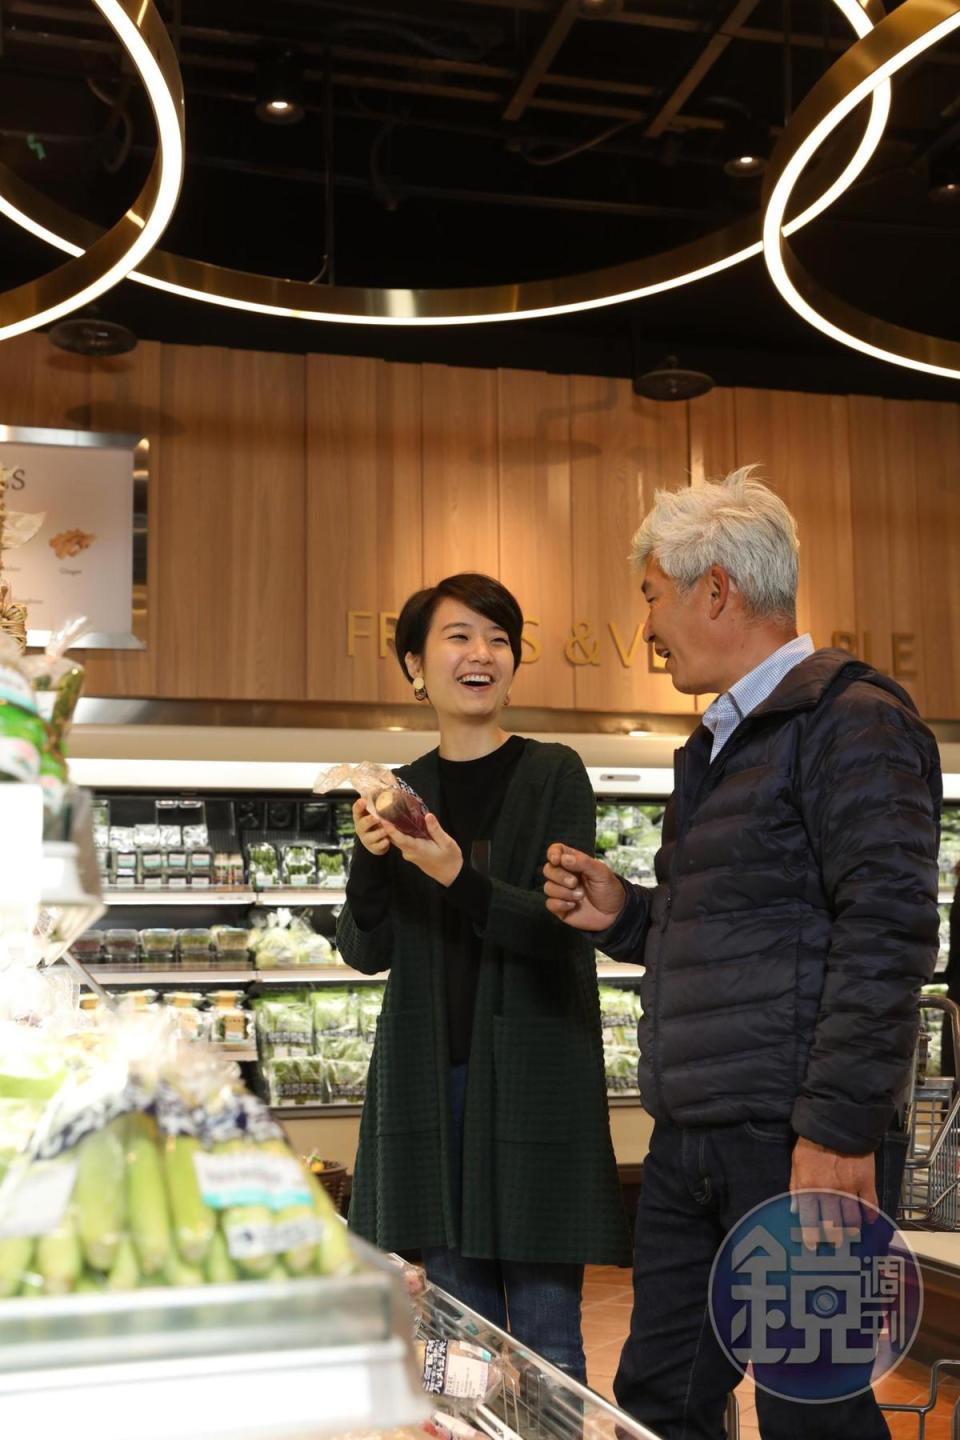 逛微風超市或許有機會遇到台南「元氣家農場」老闆林中智（右），遇到他上架蔬菜時還可以請教蔬菜知識。